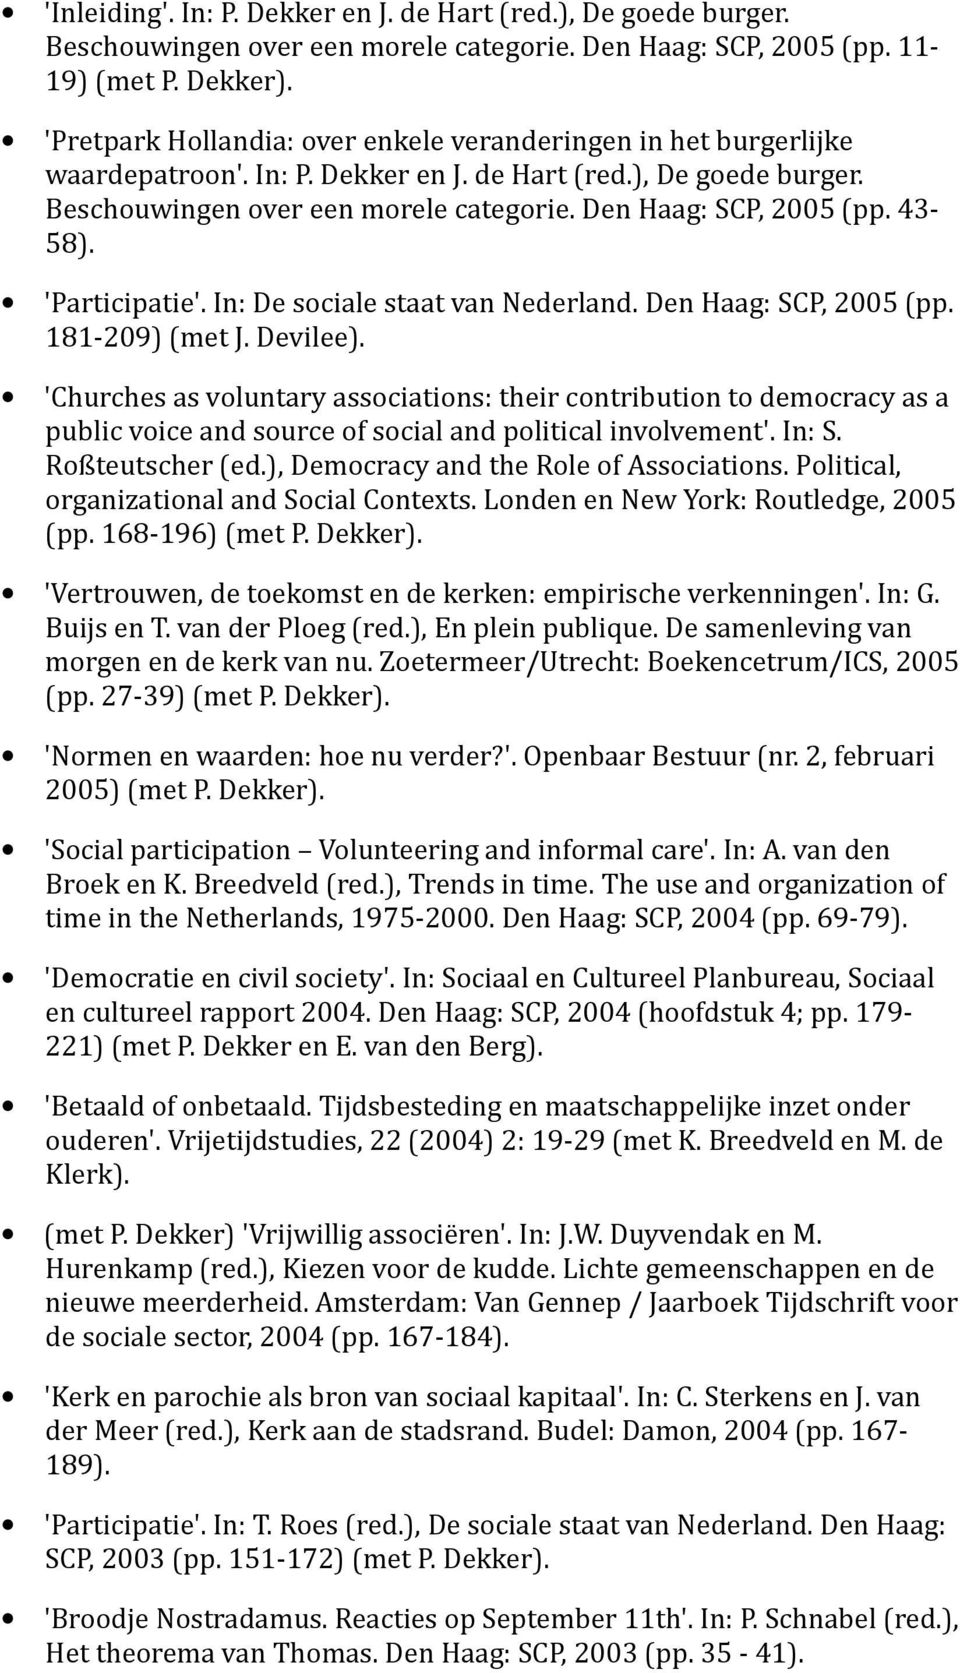 43-58). 'Participatie'. In: De sociale staat van Nederland. Den Haag: SCP, 2005 (pp. 181-209) (met J. Devilee).